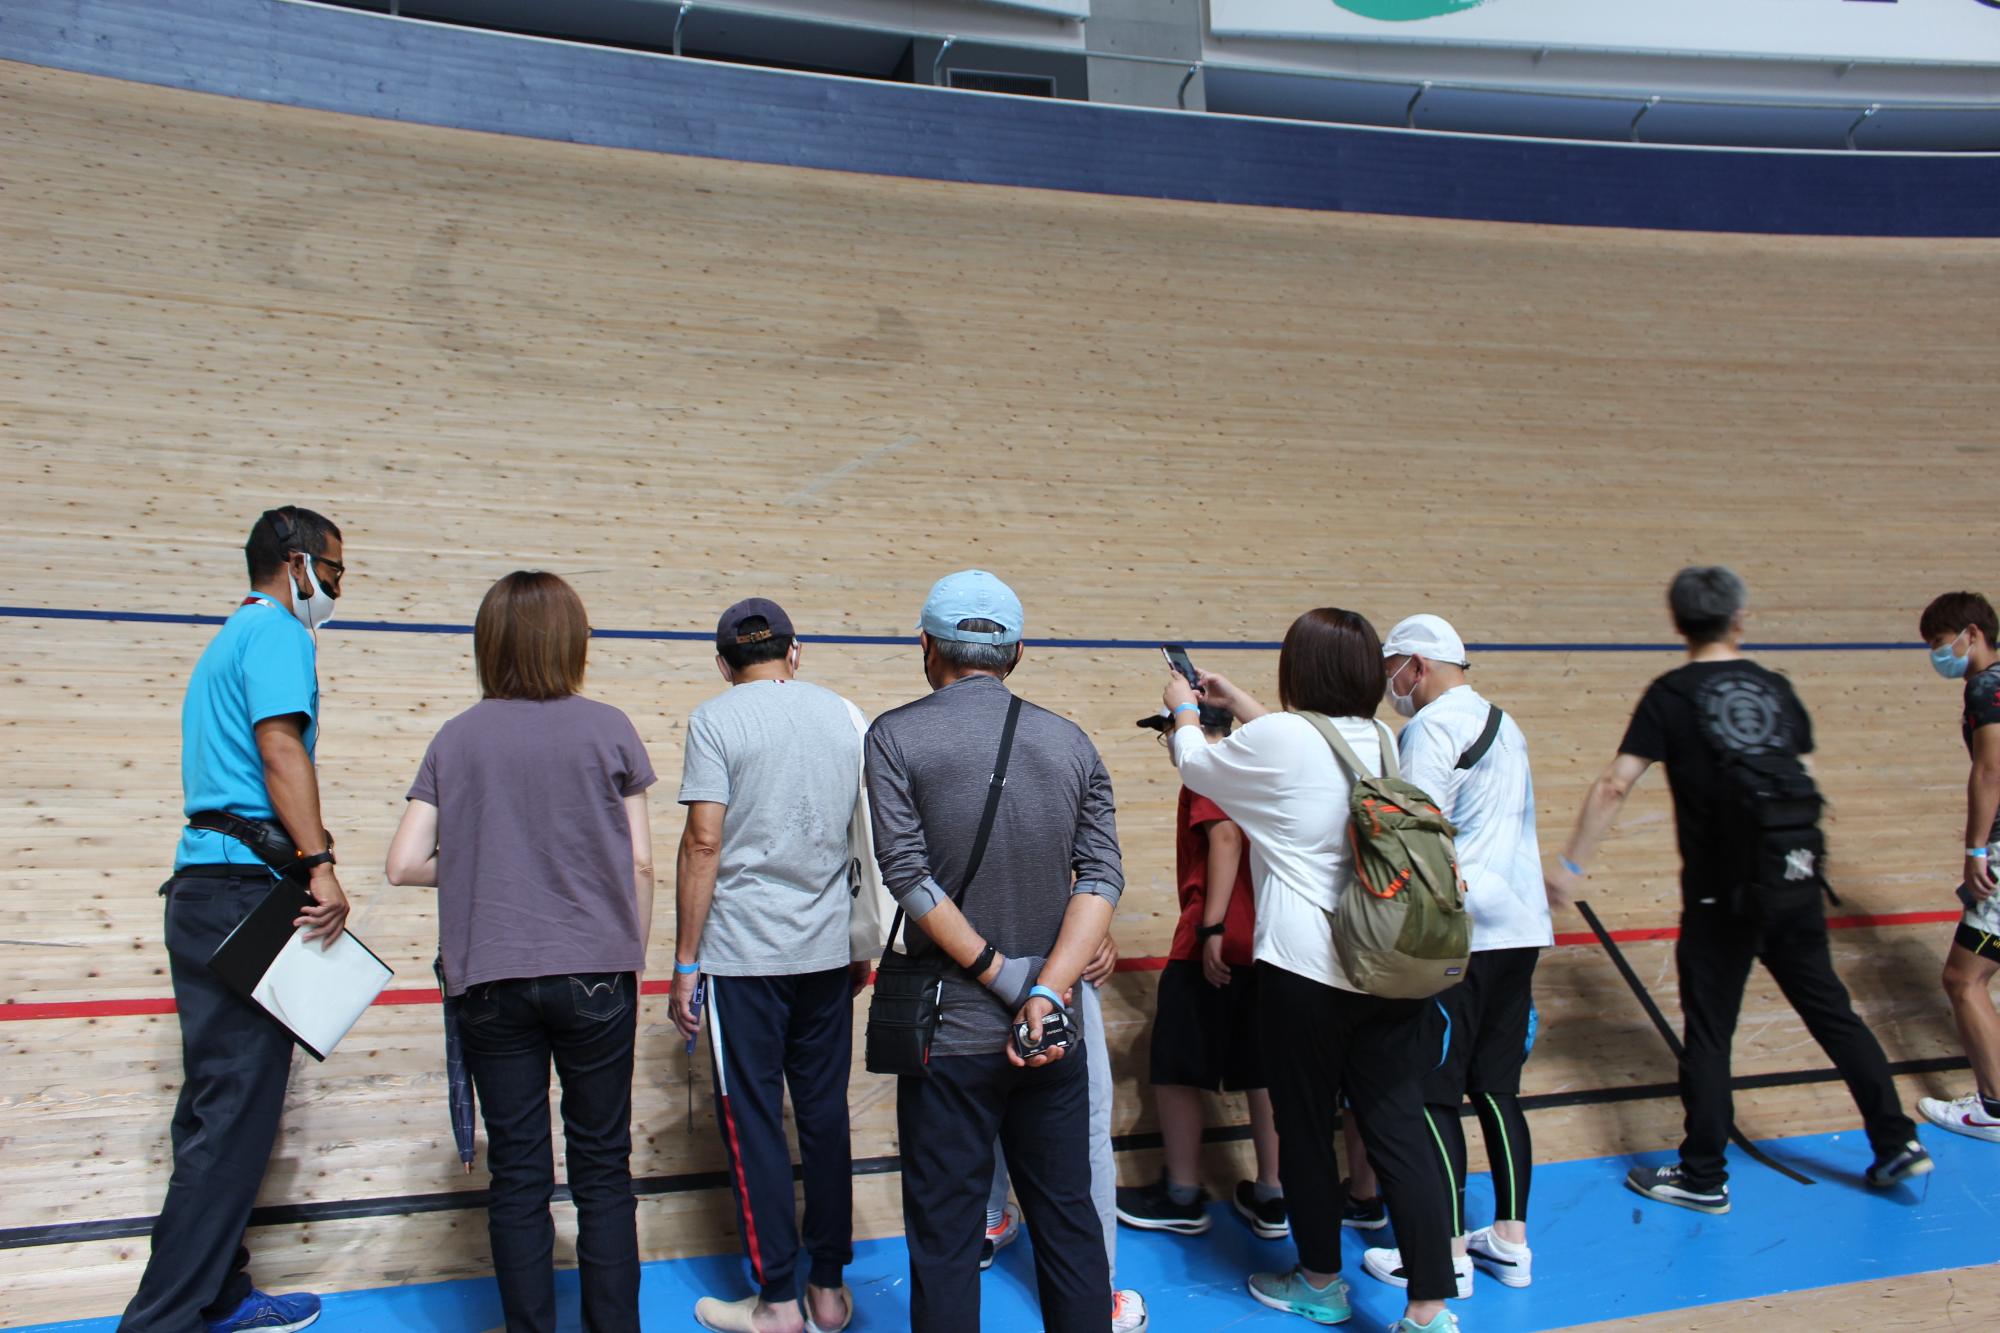 壁のような傾斜の木製トラックの前に立ち写真を撮ったり近くで見ている参加者の写真